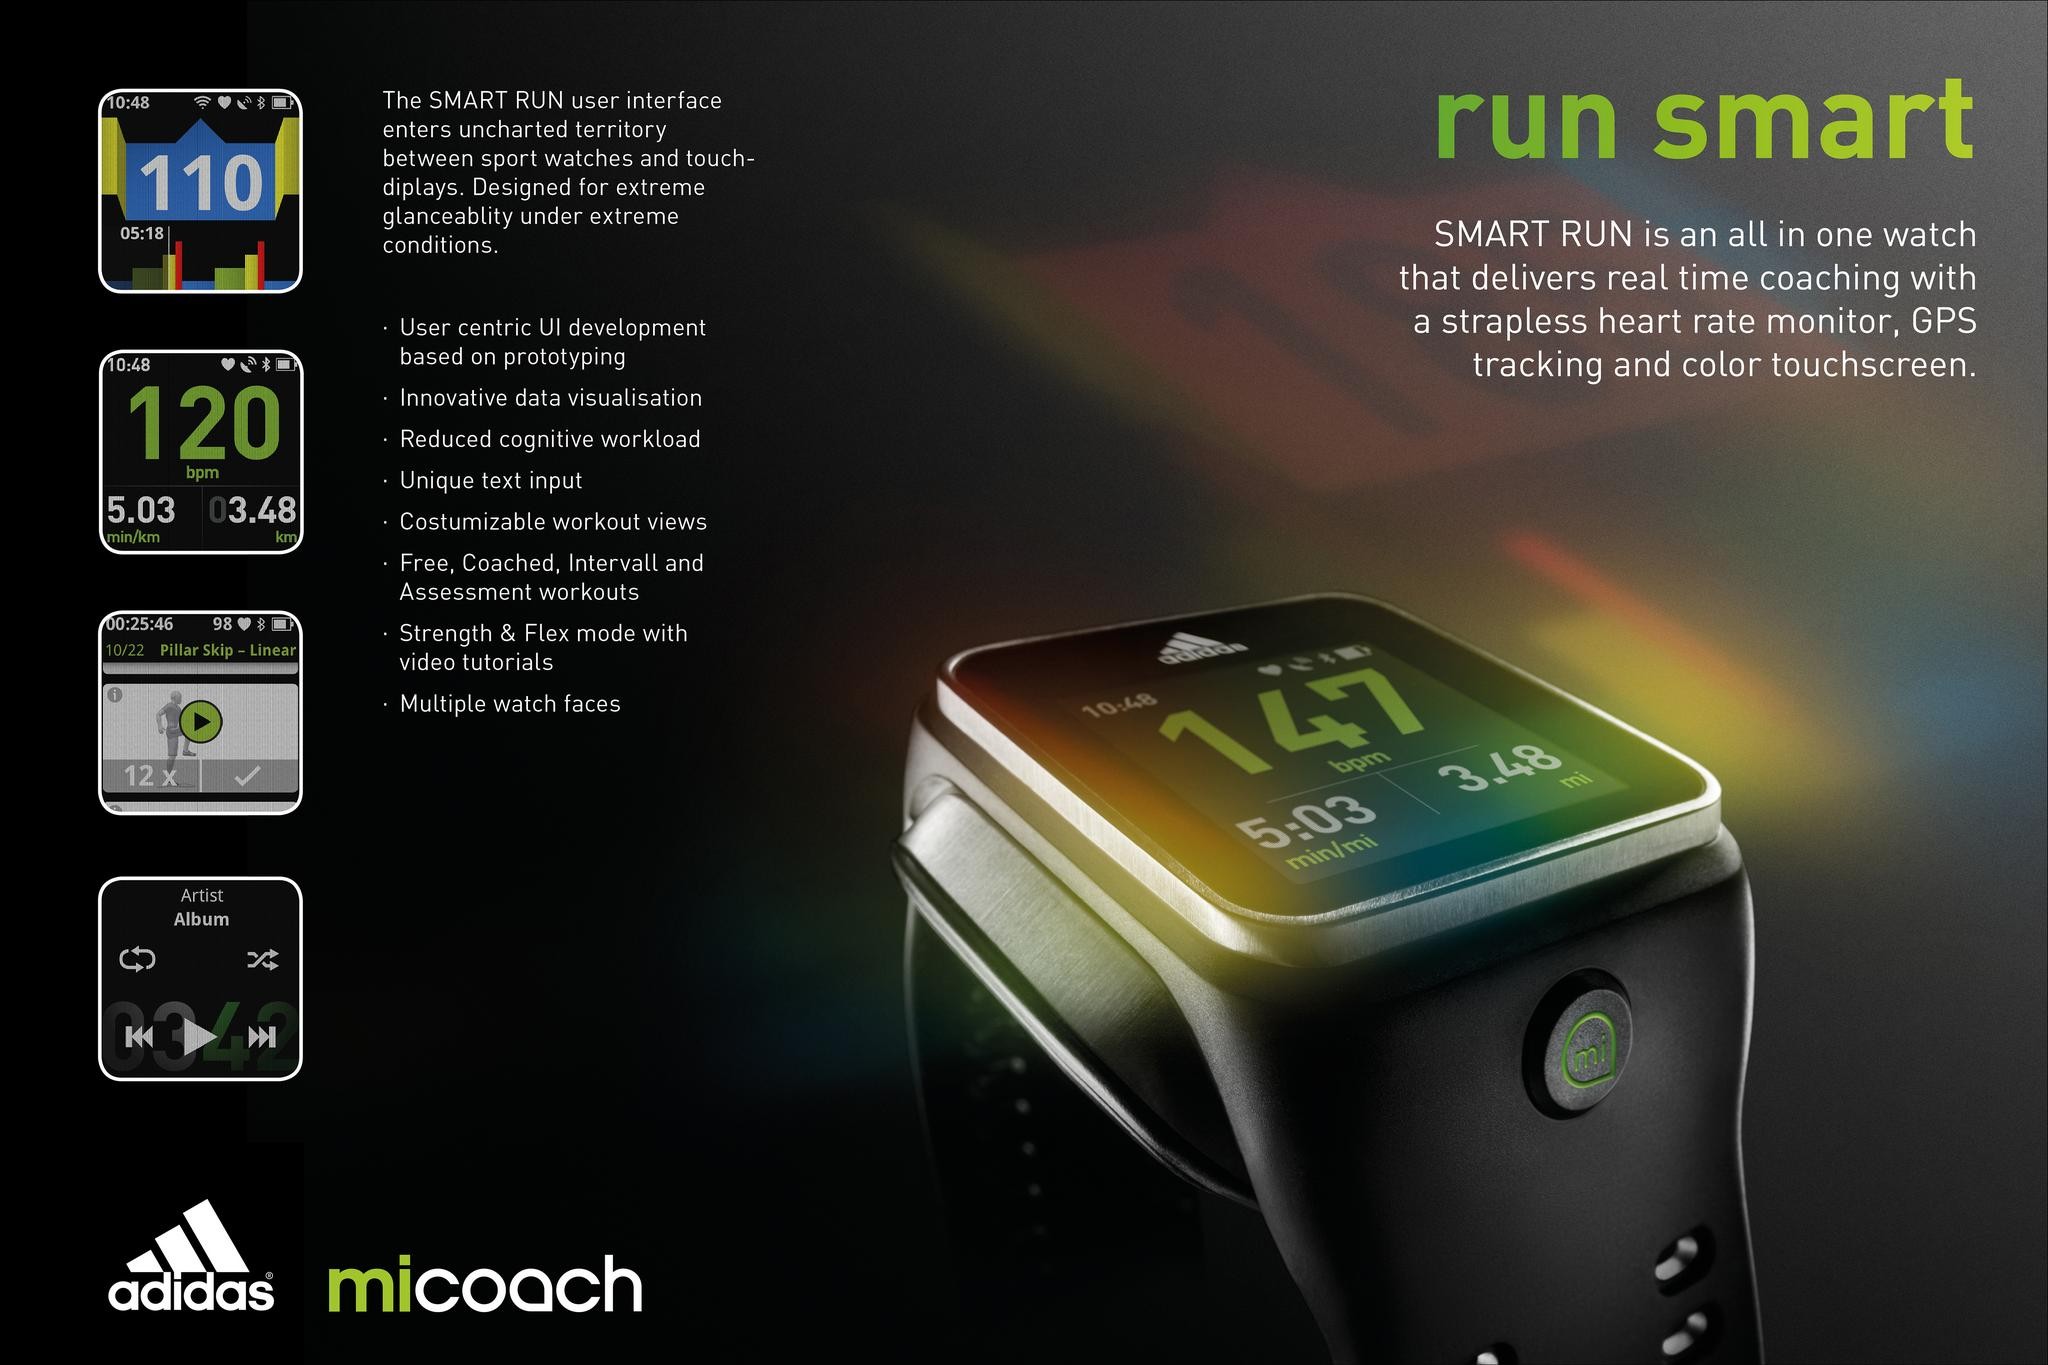 MICOACH SMART RUN - WATCH USER INTERFACE